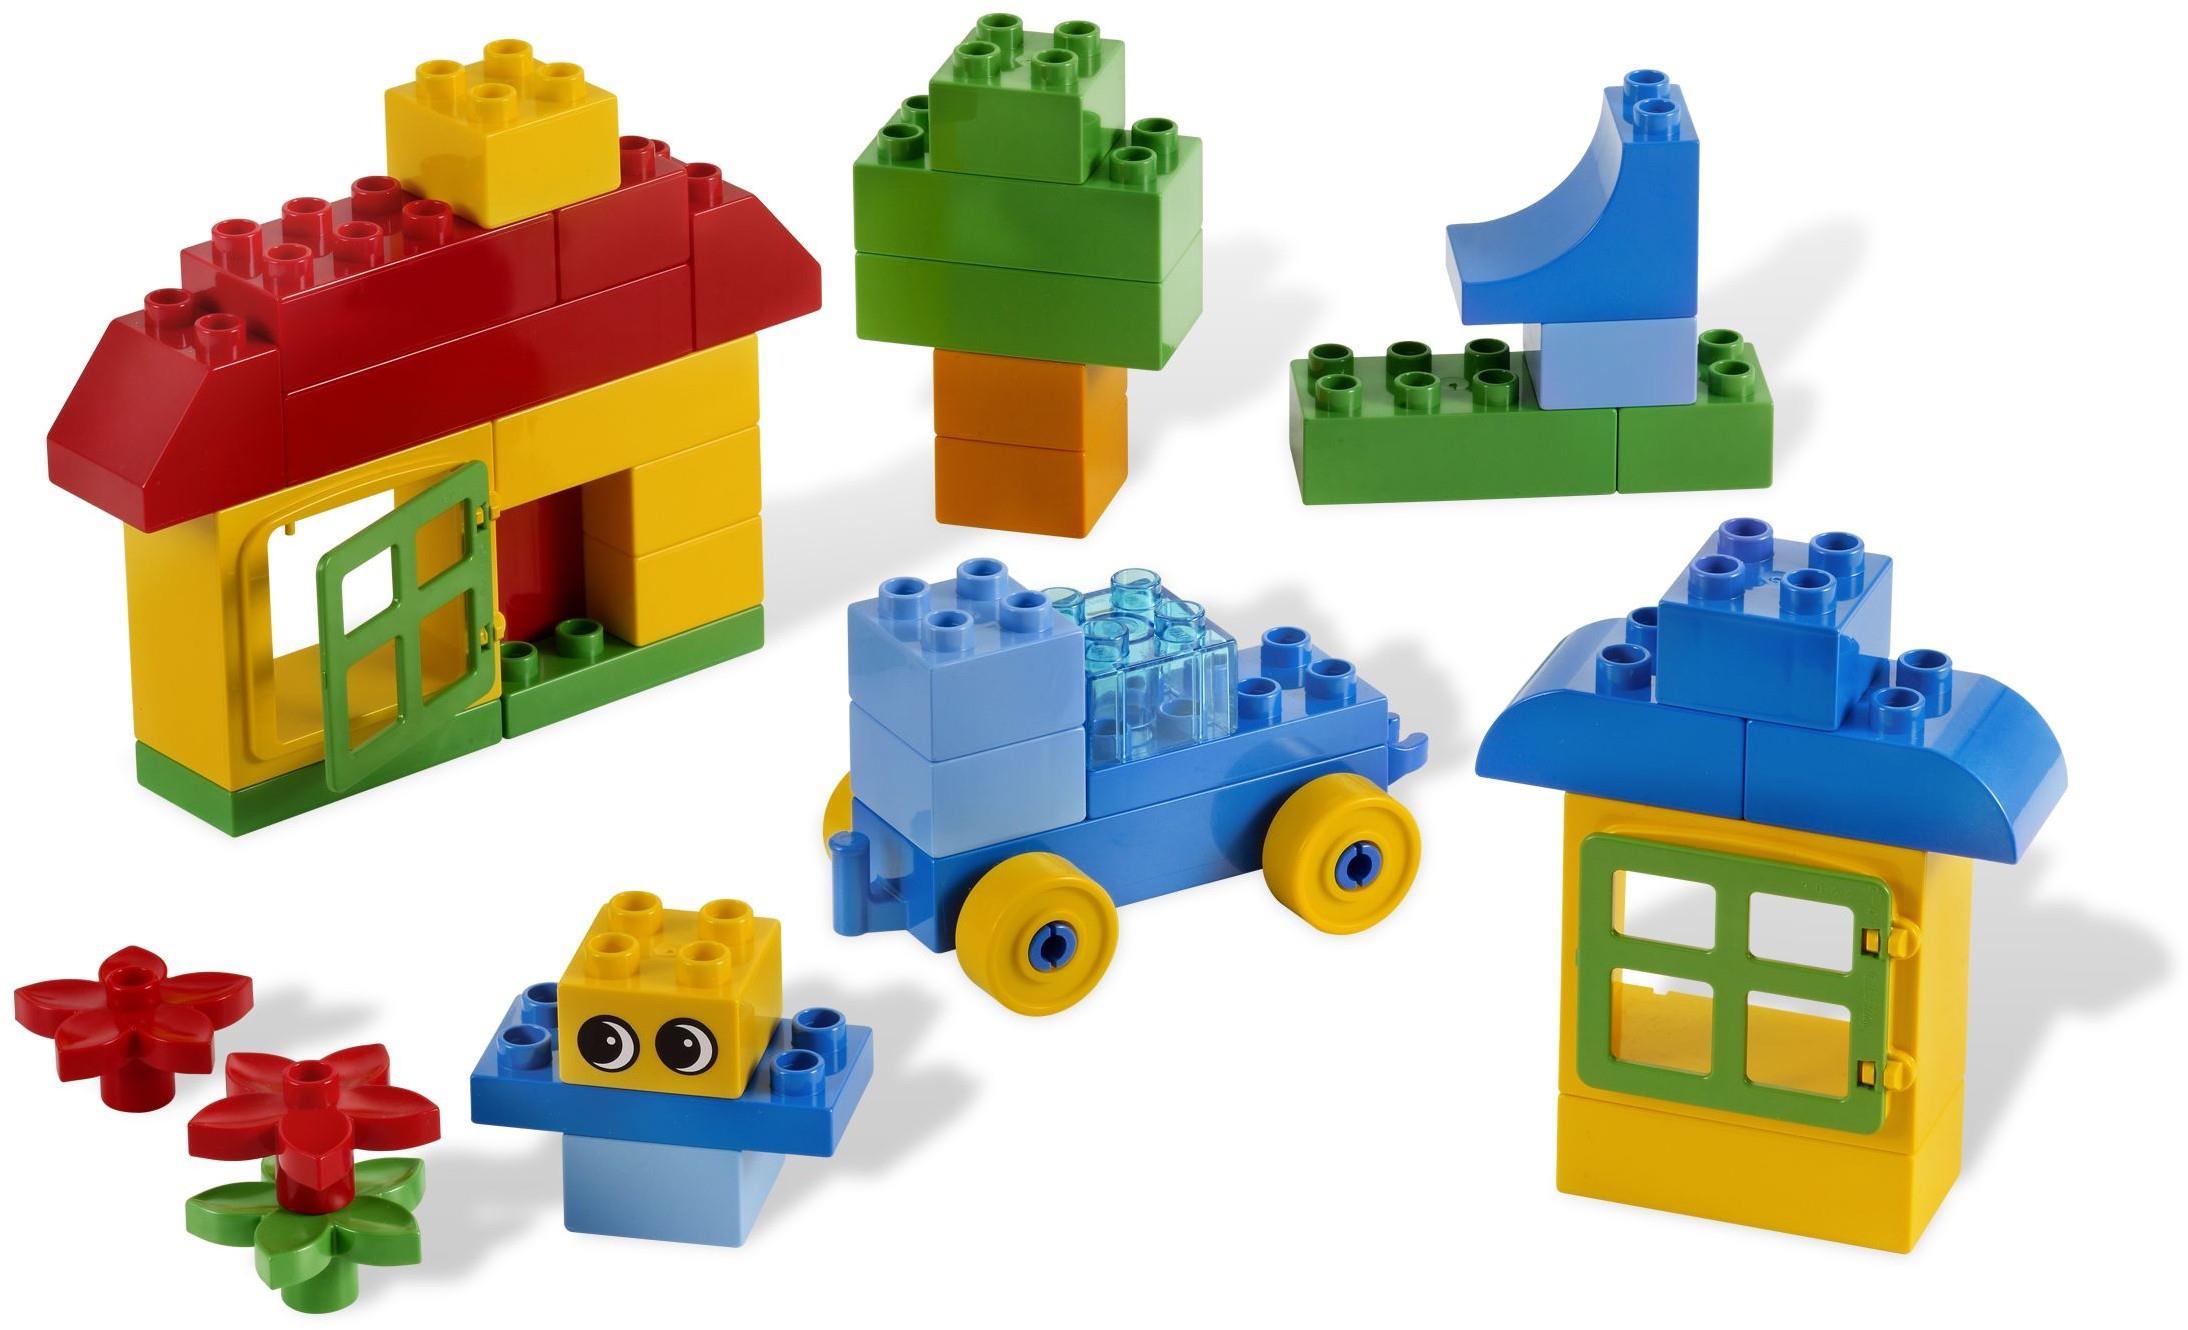 LEGO DUPLO 5548 Building Fun